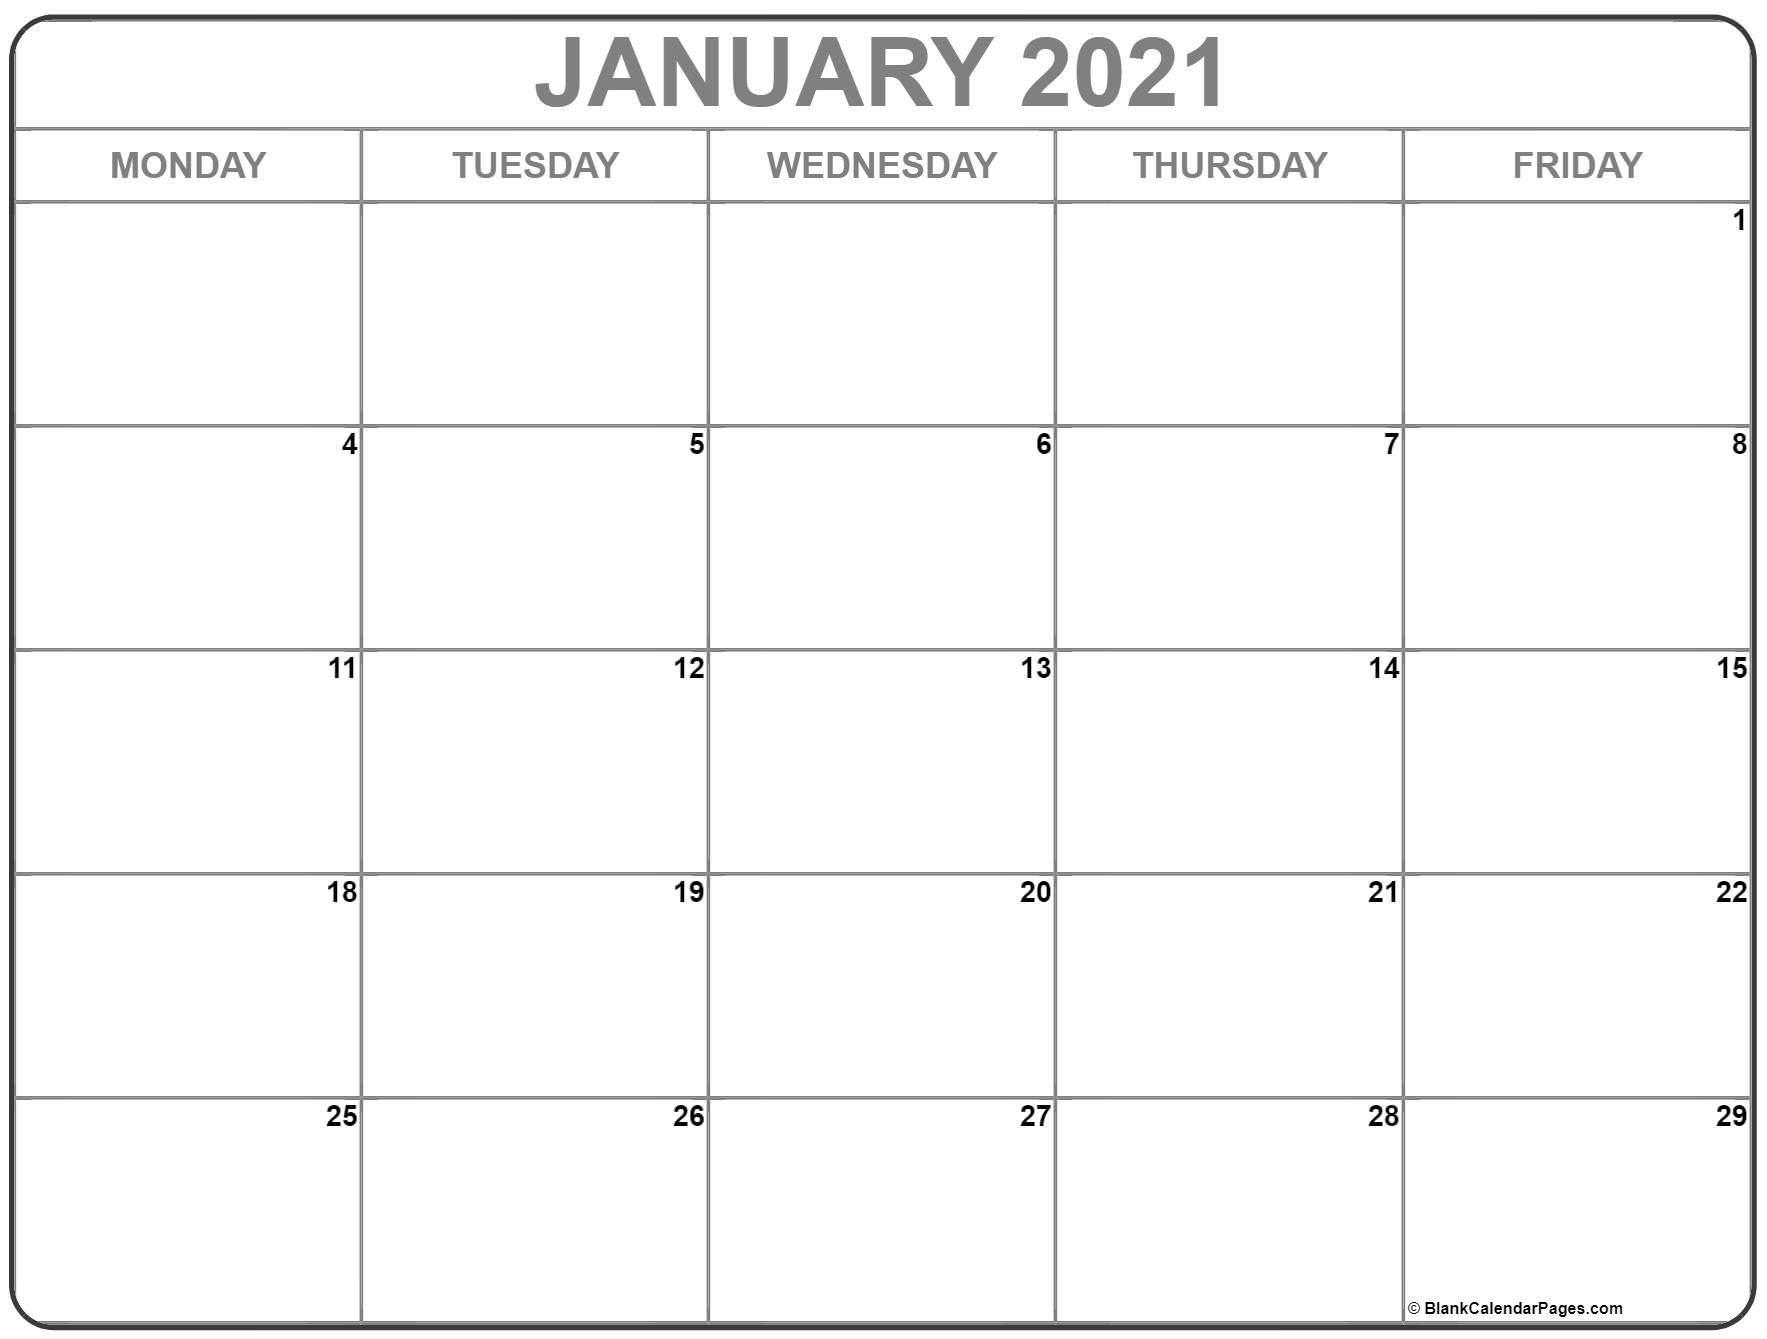 Calendar Monday Through Friday 2021 - Example Calendar